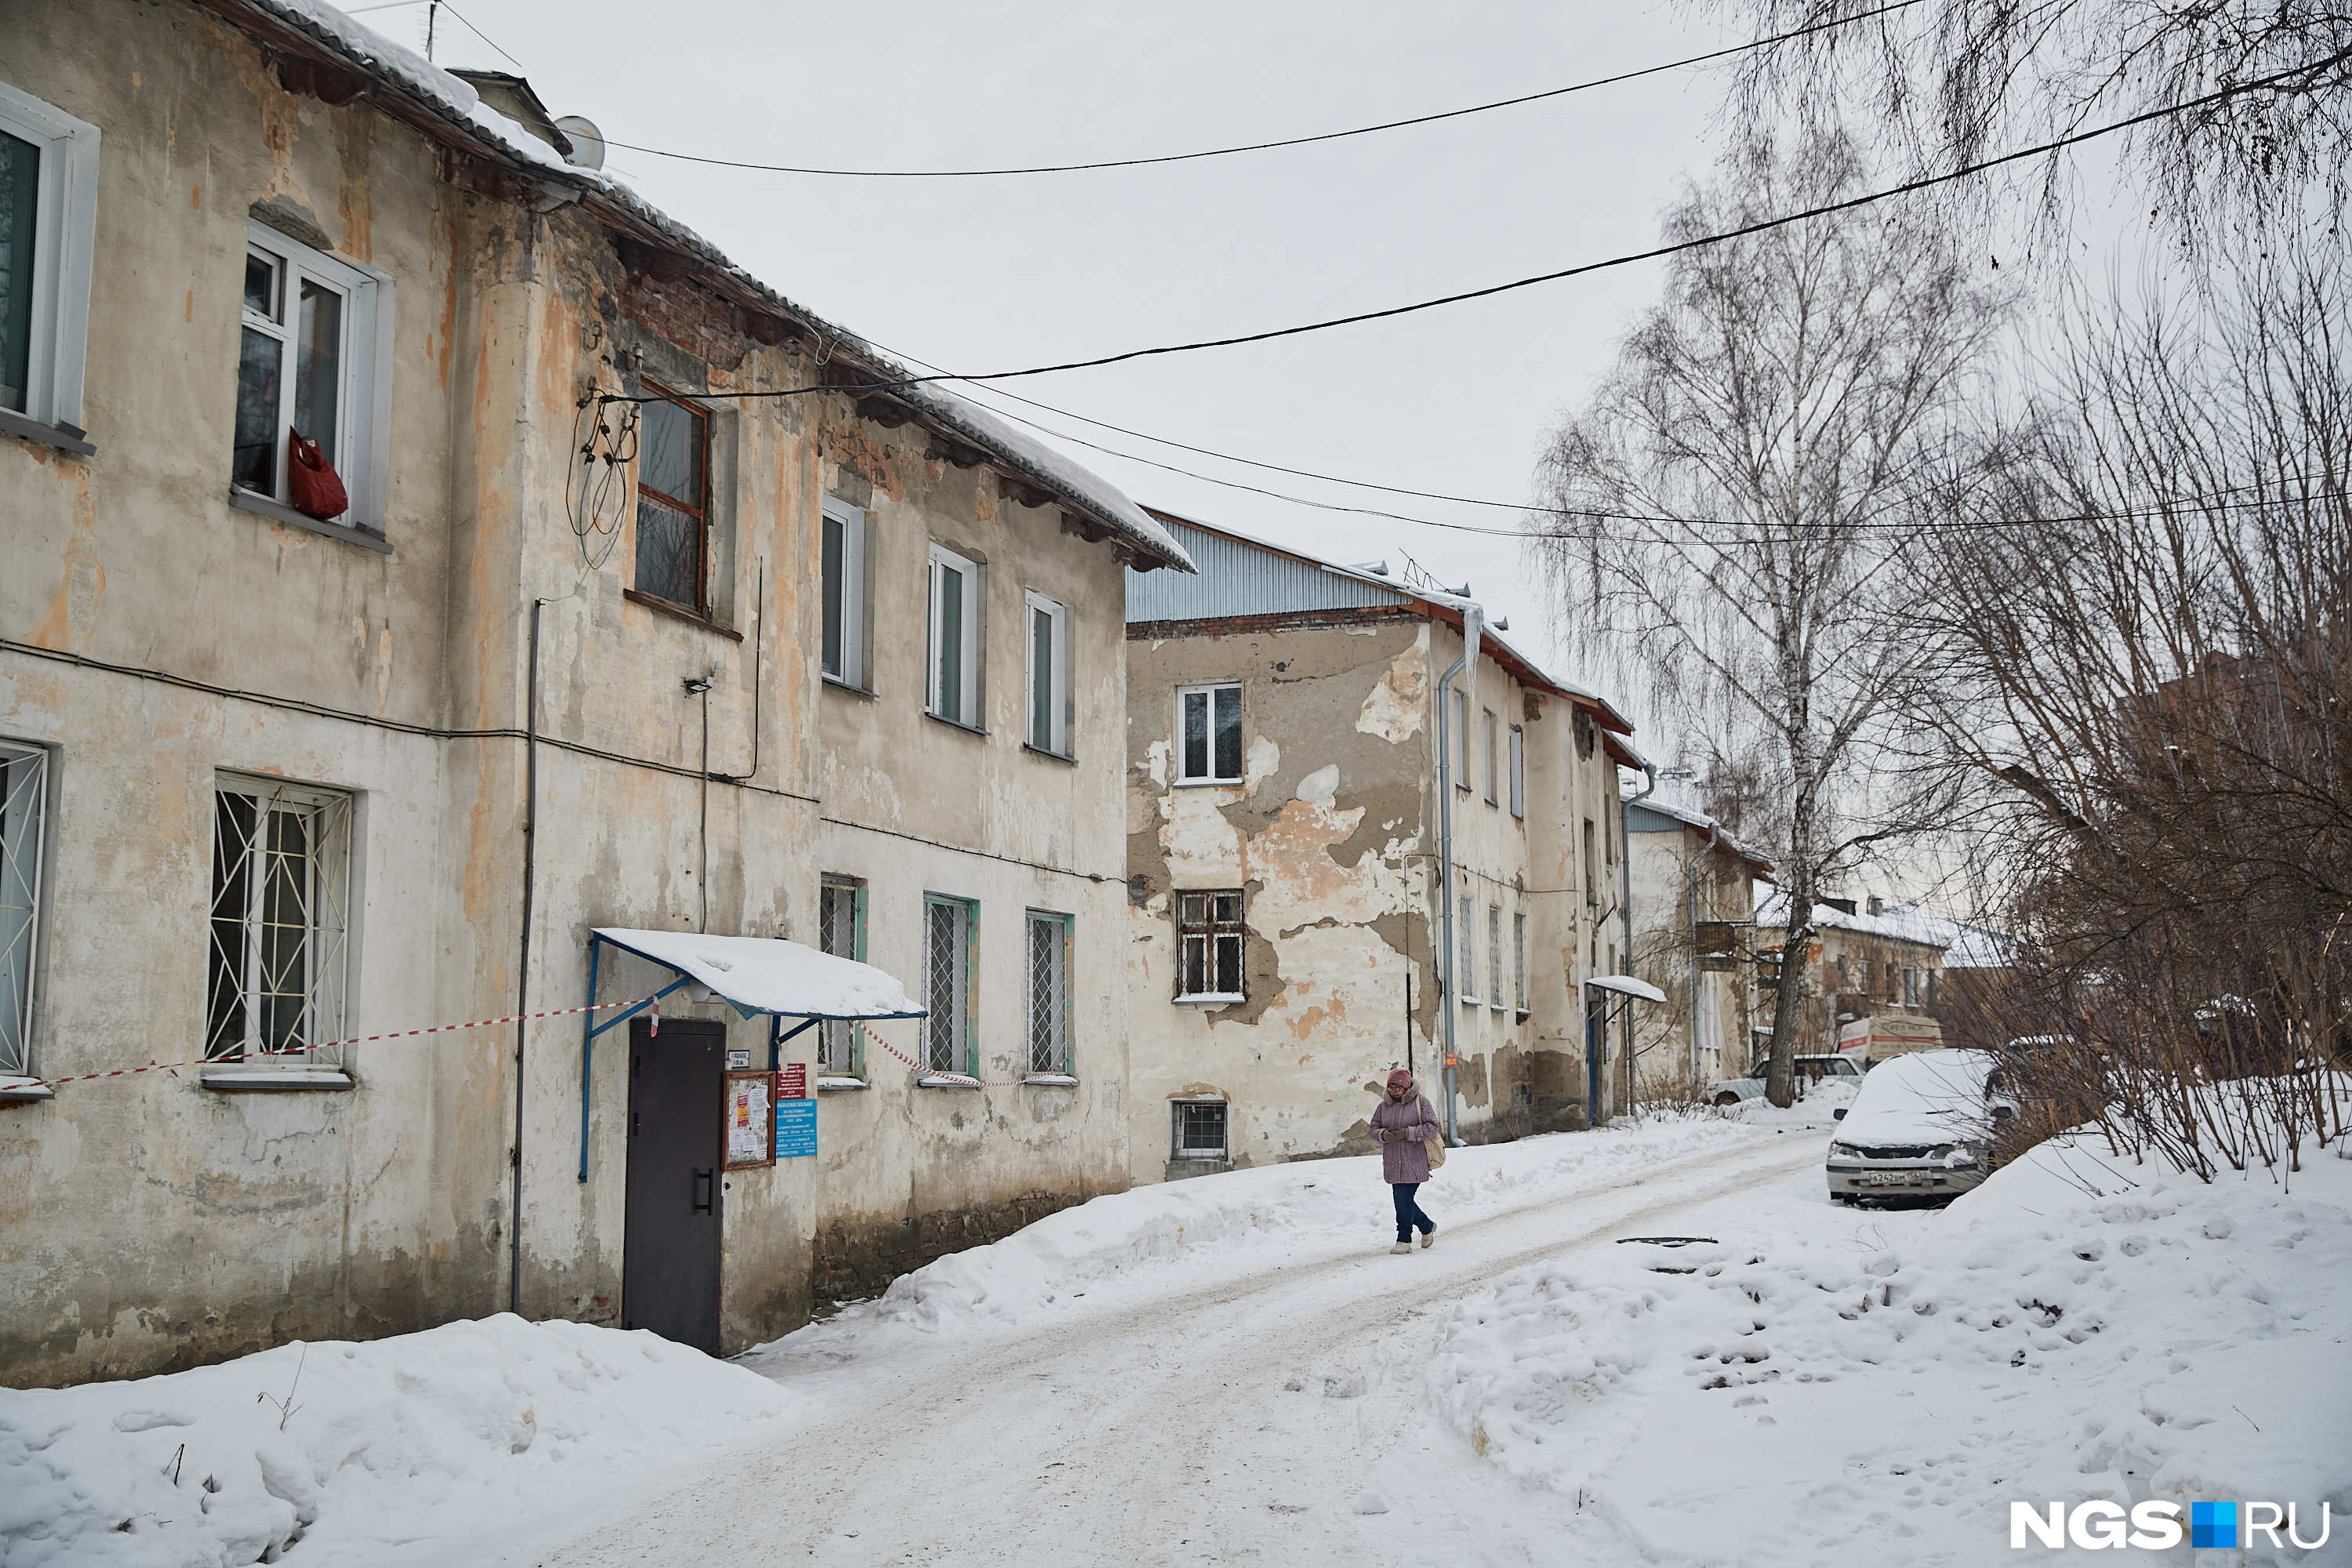 Три дома на улице 2-й Шевцовой были признаны аварийными на основании экспертиз «АлексГрупп». Теперь в корректности этих заключений разбирается следствие